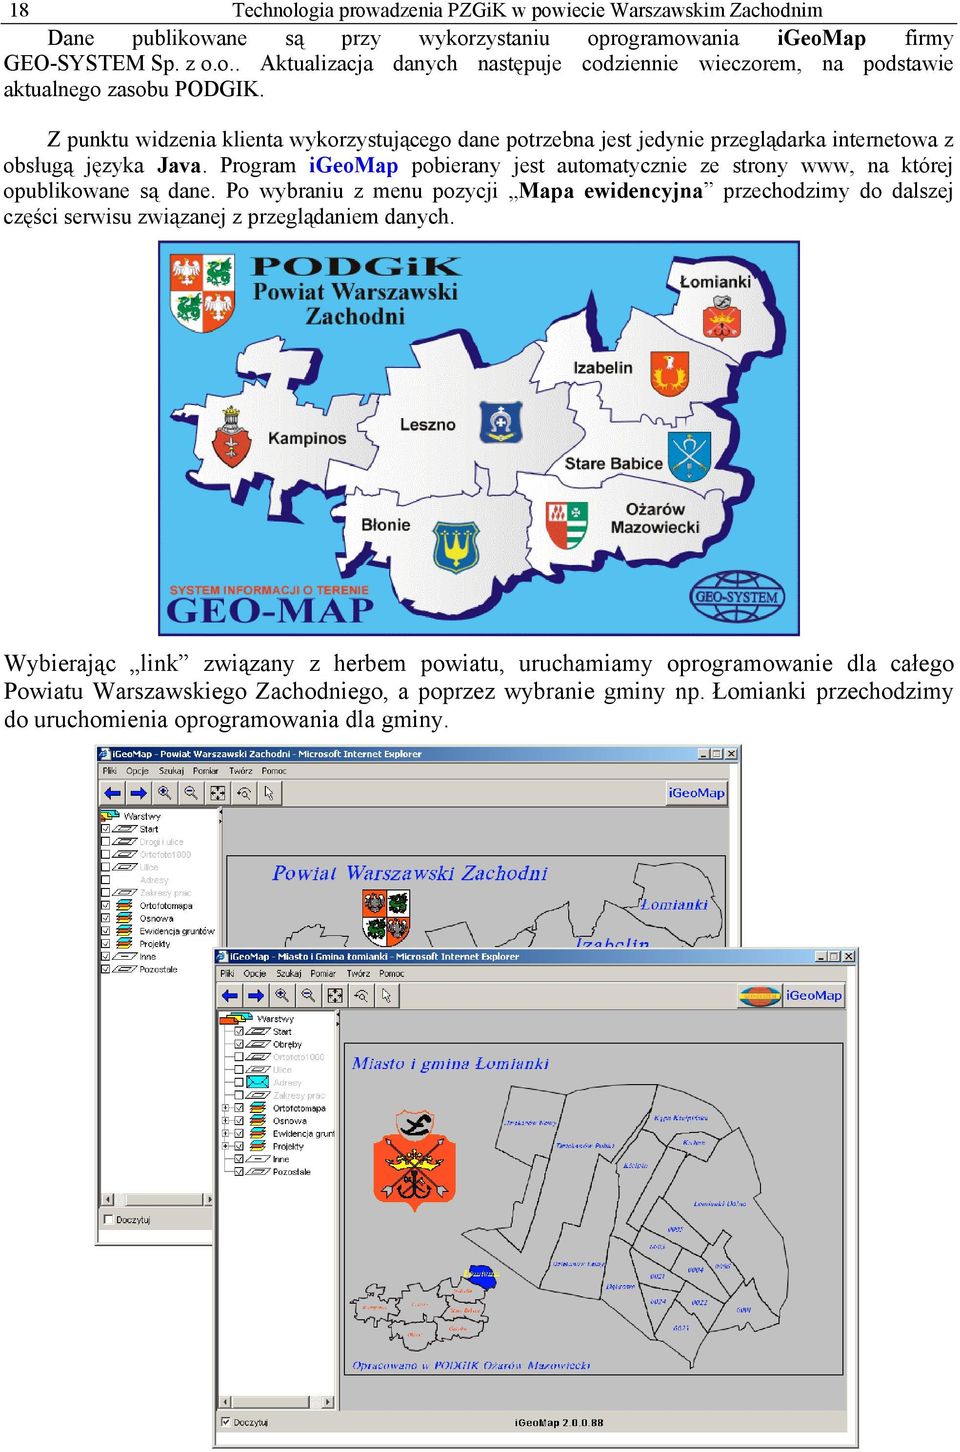 Program igeomap pobierany jest automatycznie ze strony www, na której opublikowane są dane.